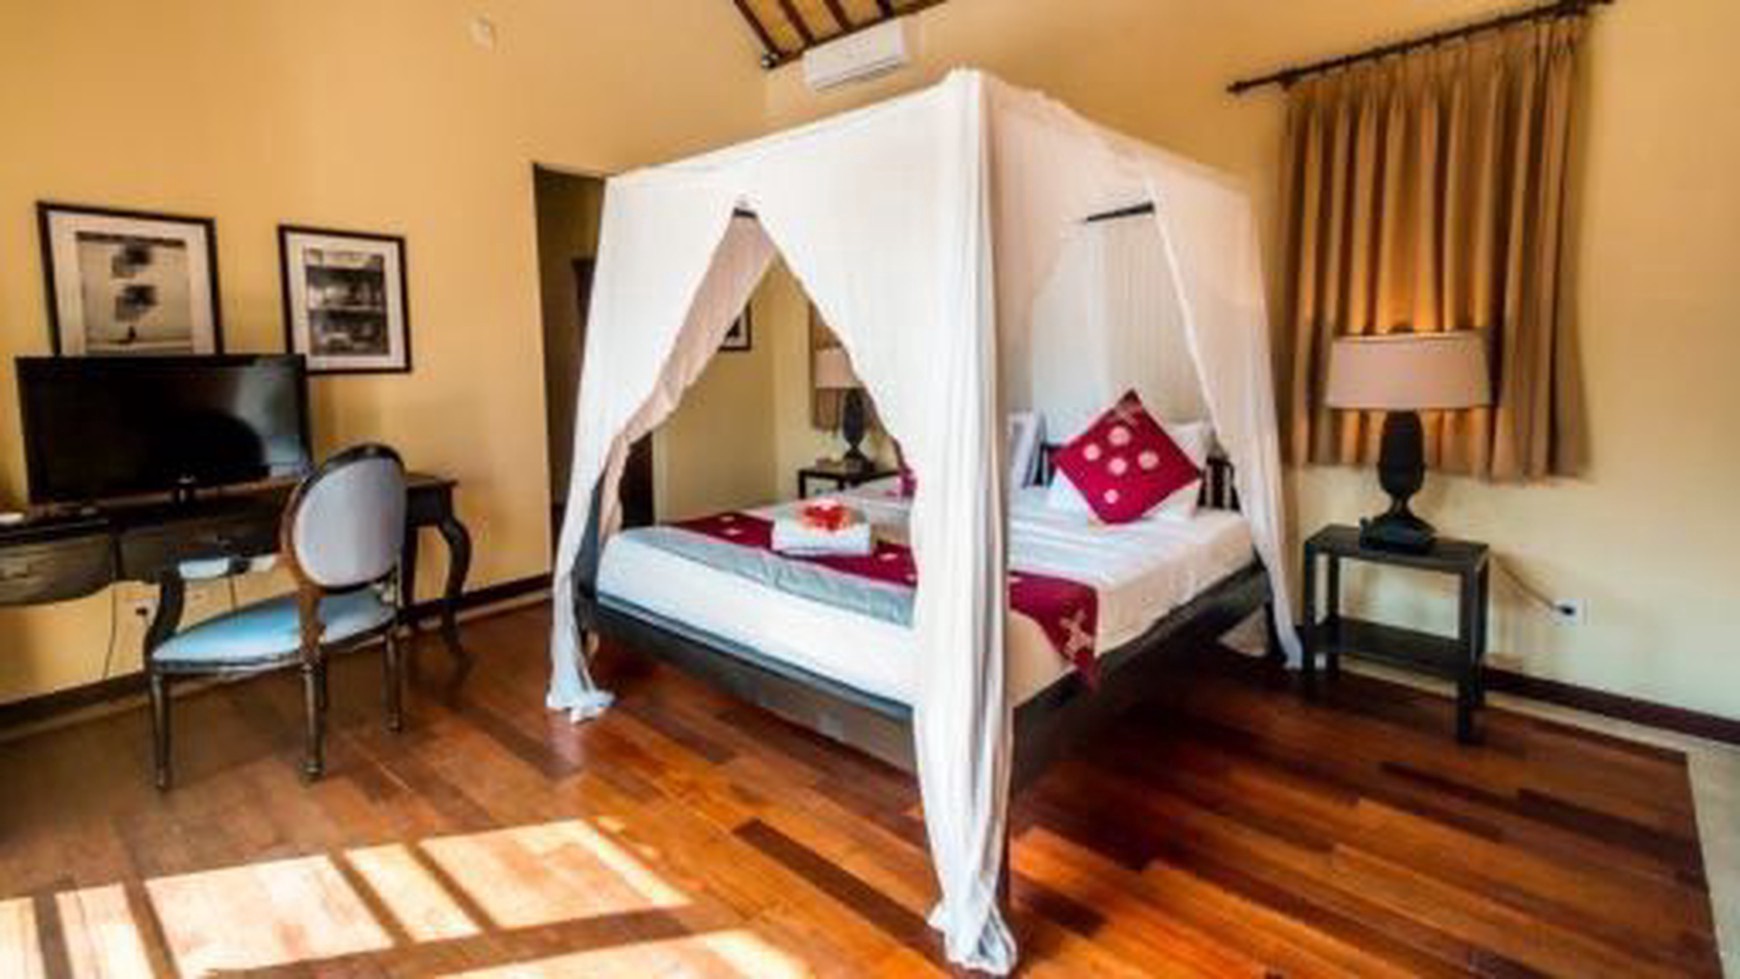 For Rent 2 Bedroom Villa In Umalas